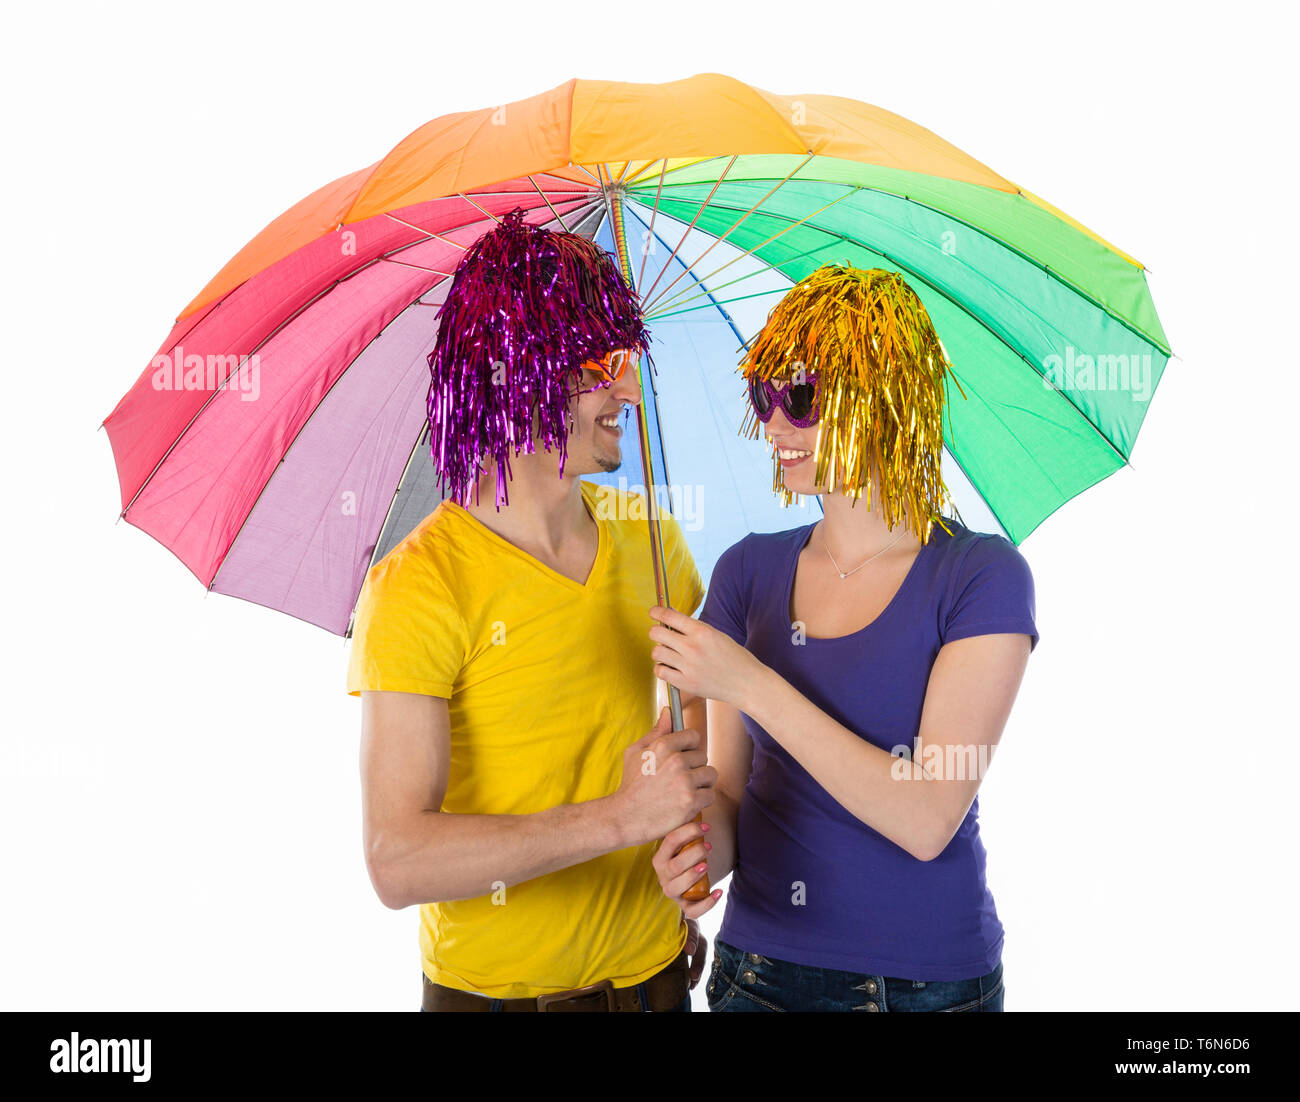 Funny giovane con le parrucche, occhiali da sole e ombrelloni Foto Stock